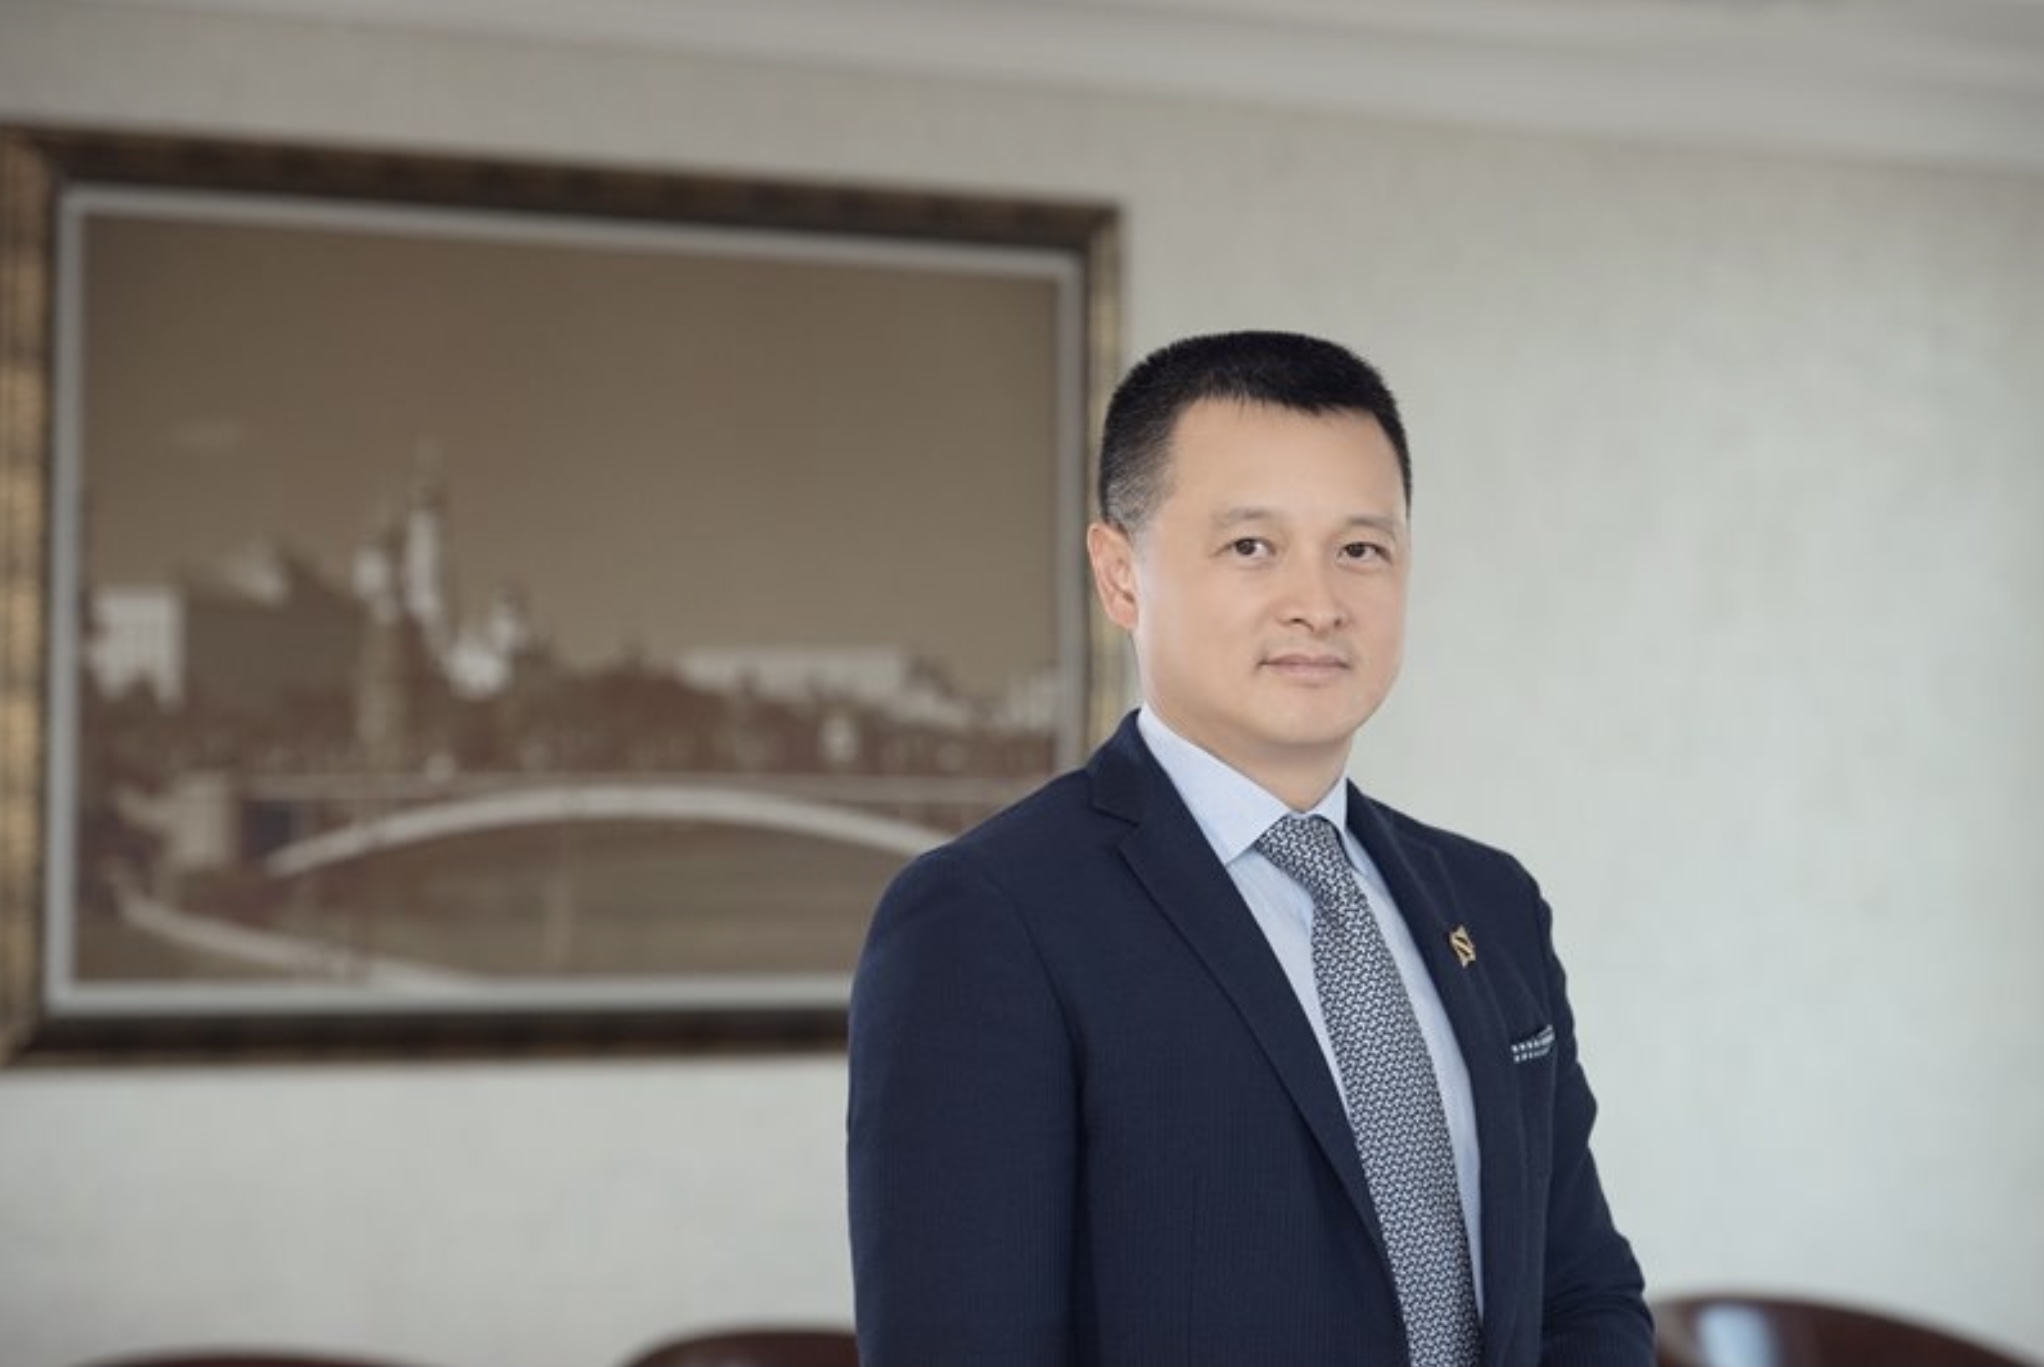 Chân dung ông Đặng Minh Trường - hiện là Chủ tịch Hội đồng quản trị Tập đoàn Sun Group